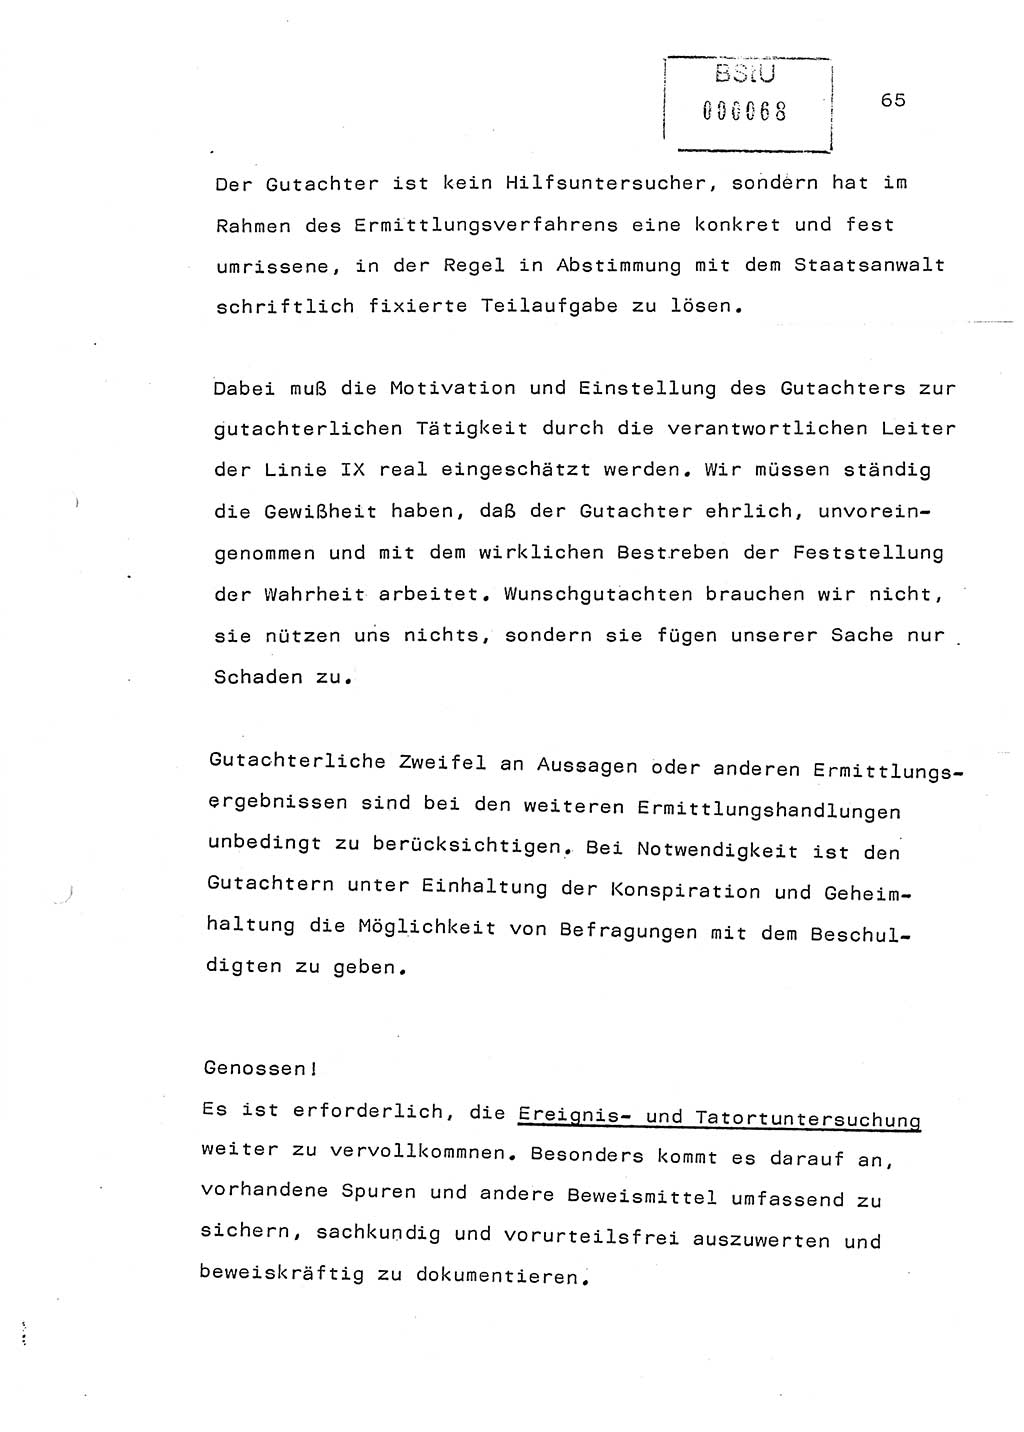 Referat (Generaloberst Erich Mielke) auf der Zentralen Dienstkonferenz am 24.5.1979 [Ministerium für Staatssicherheit (MfS), Deutsche Demokratische Republik (DDR), Der Minister], Berlin 1979, Seite 65 (Ref. DK DDR MfS Min. /79 1979, S. 65)